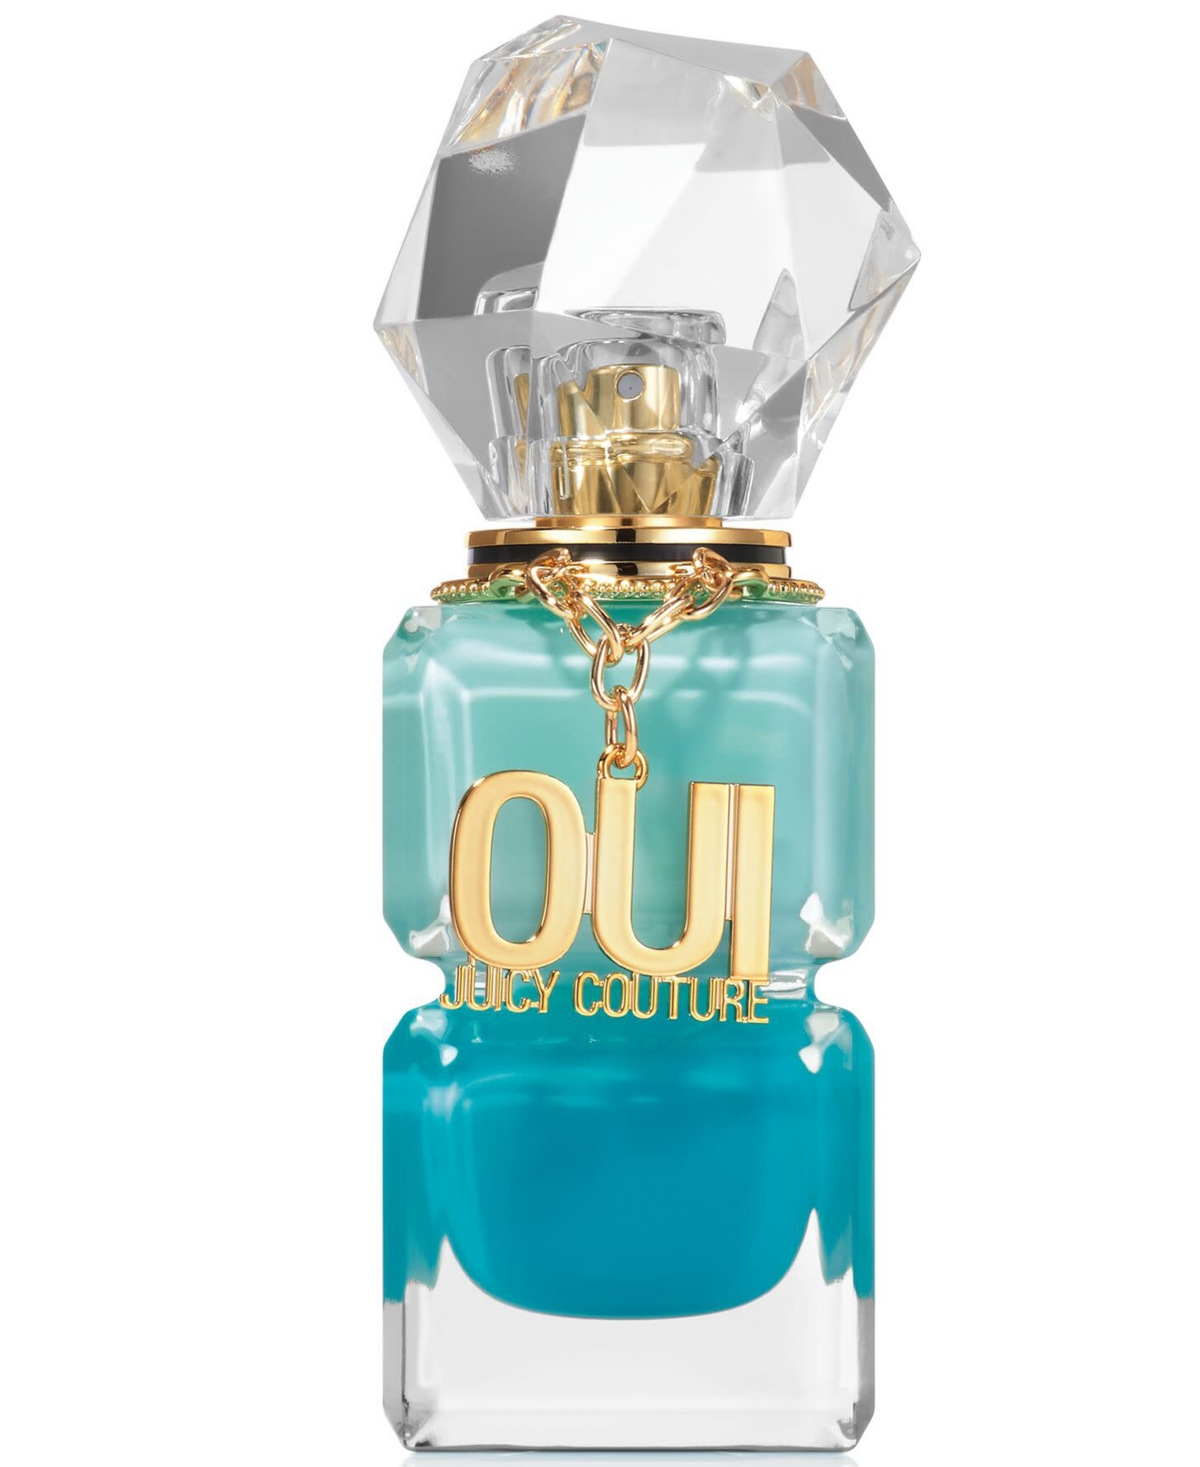 Juicy Couture - OUI Juicy Couture Splash 3-PC Gift Set - Beauty Bridge